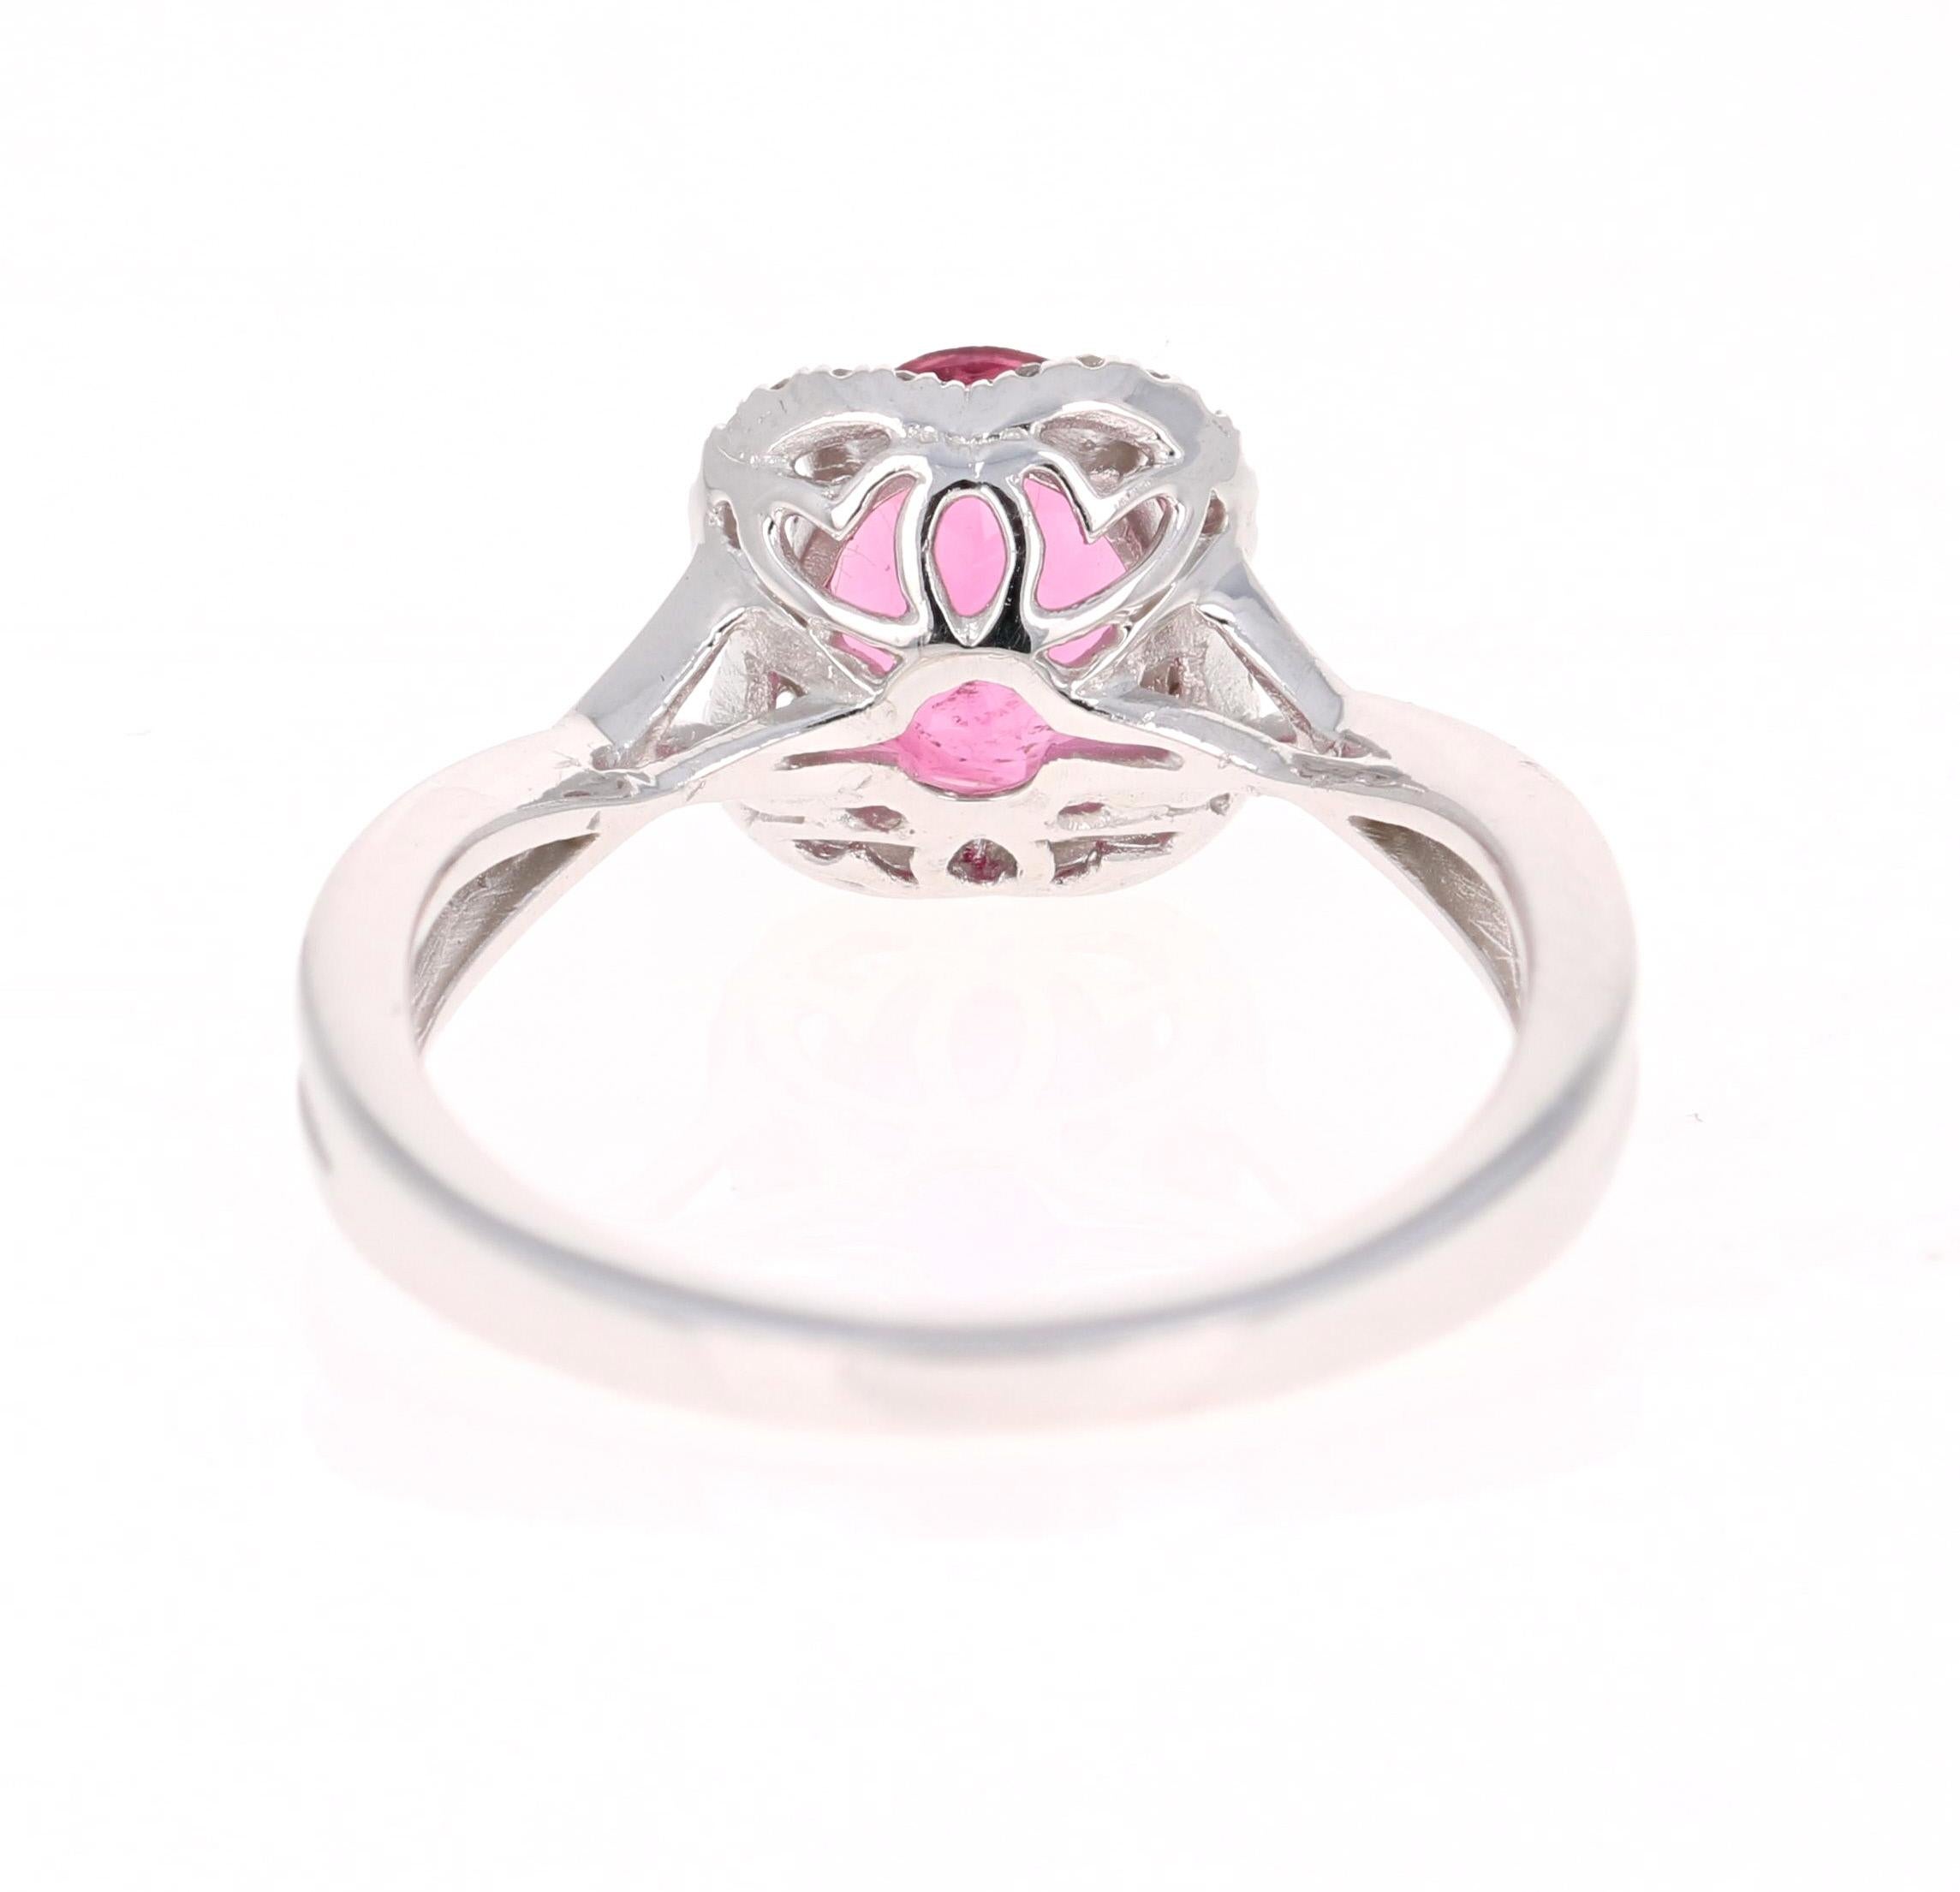 Oval Cut 1.38 Carat Pink Tourmaline Diamond 14 Karat White Gold Ring